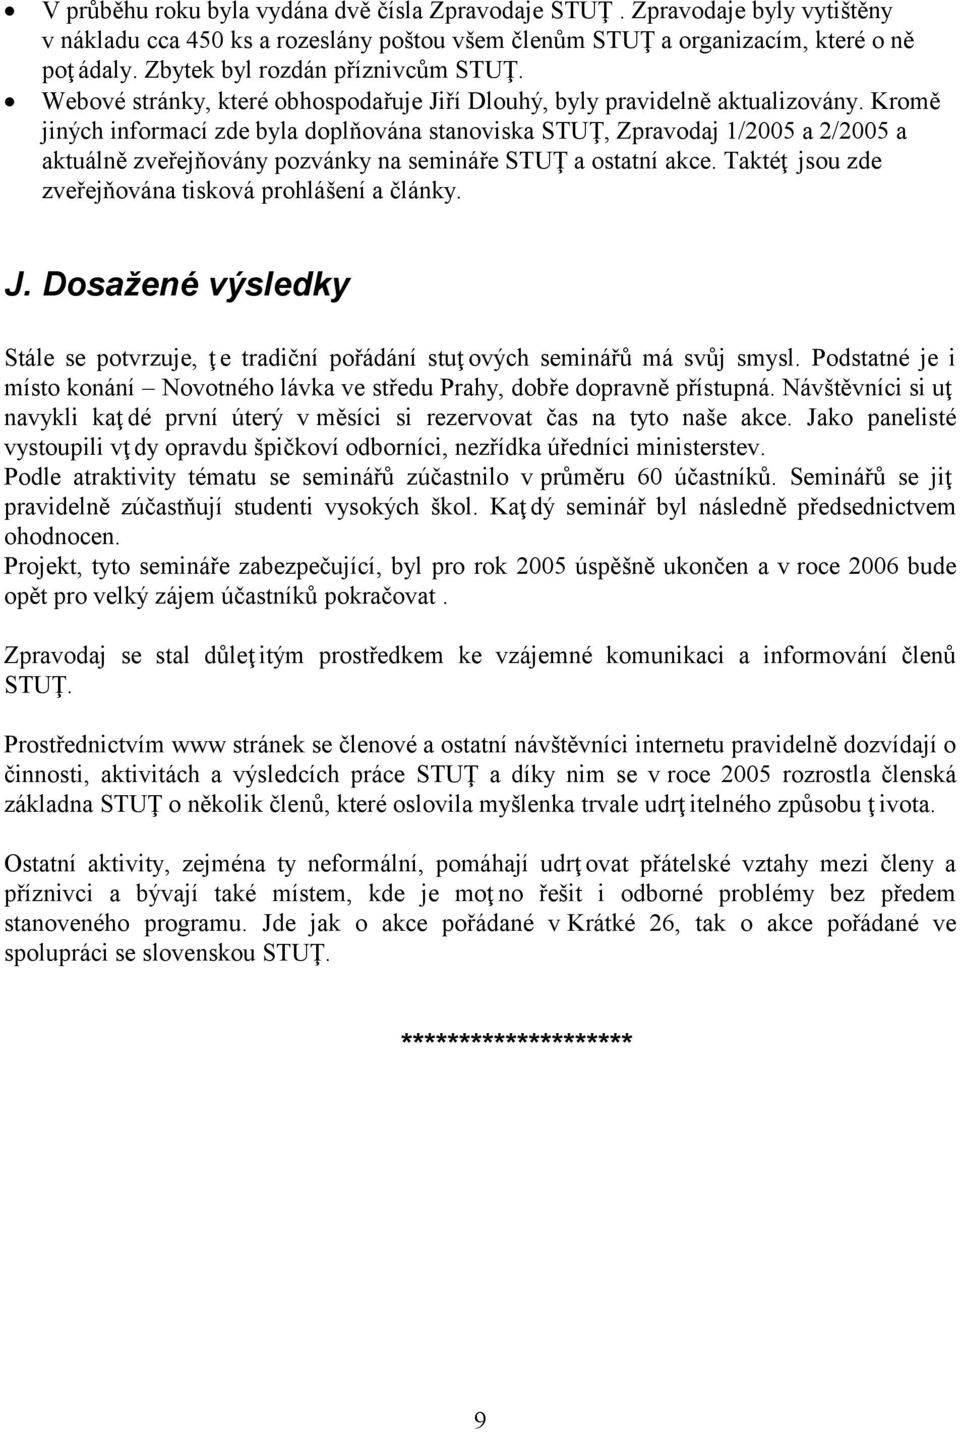 Kromě jiných informací zde byla doplňována stanoviska STUŢ, Zpravodaj 1/2005 a 2/2005 a aktuálně zveřejňovány pozvánky na semináře STUŢ a ostatní akce.